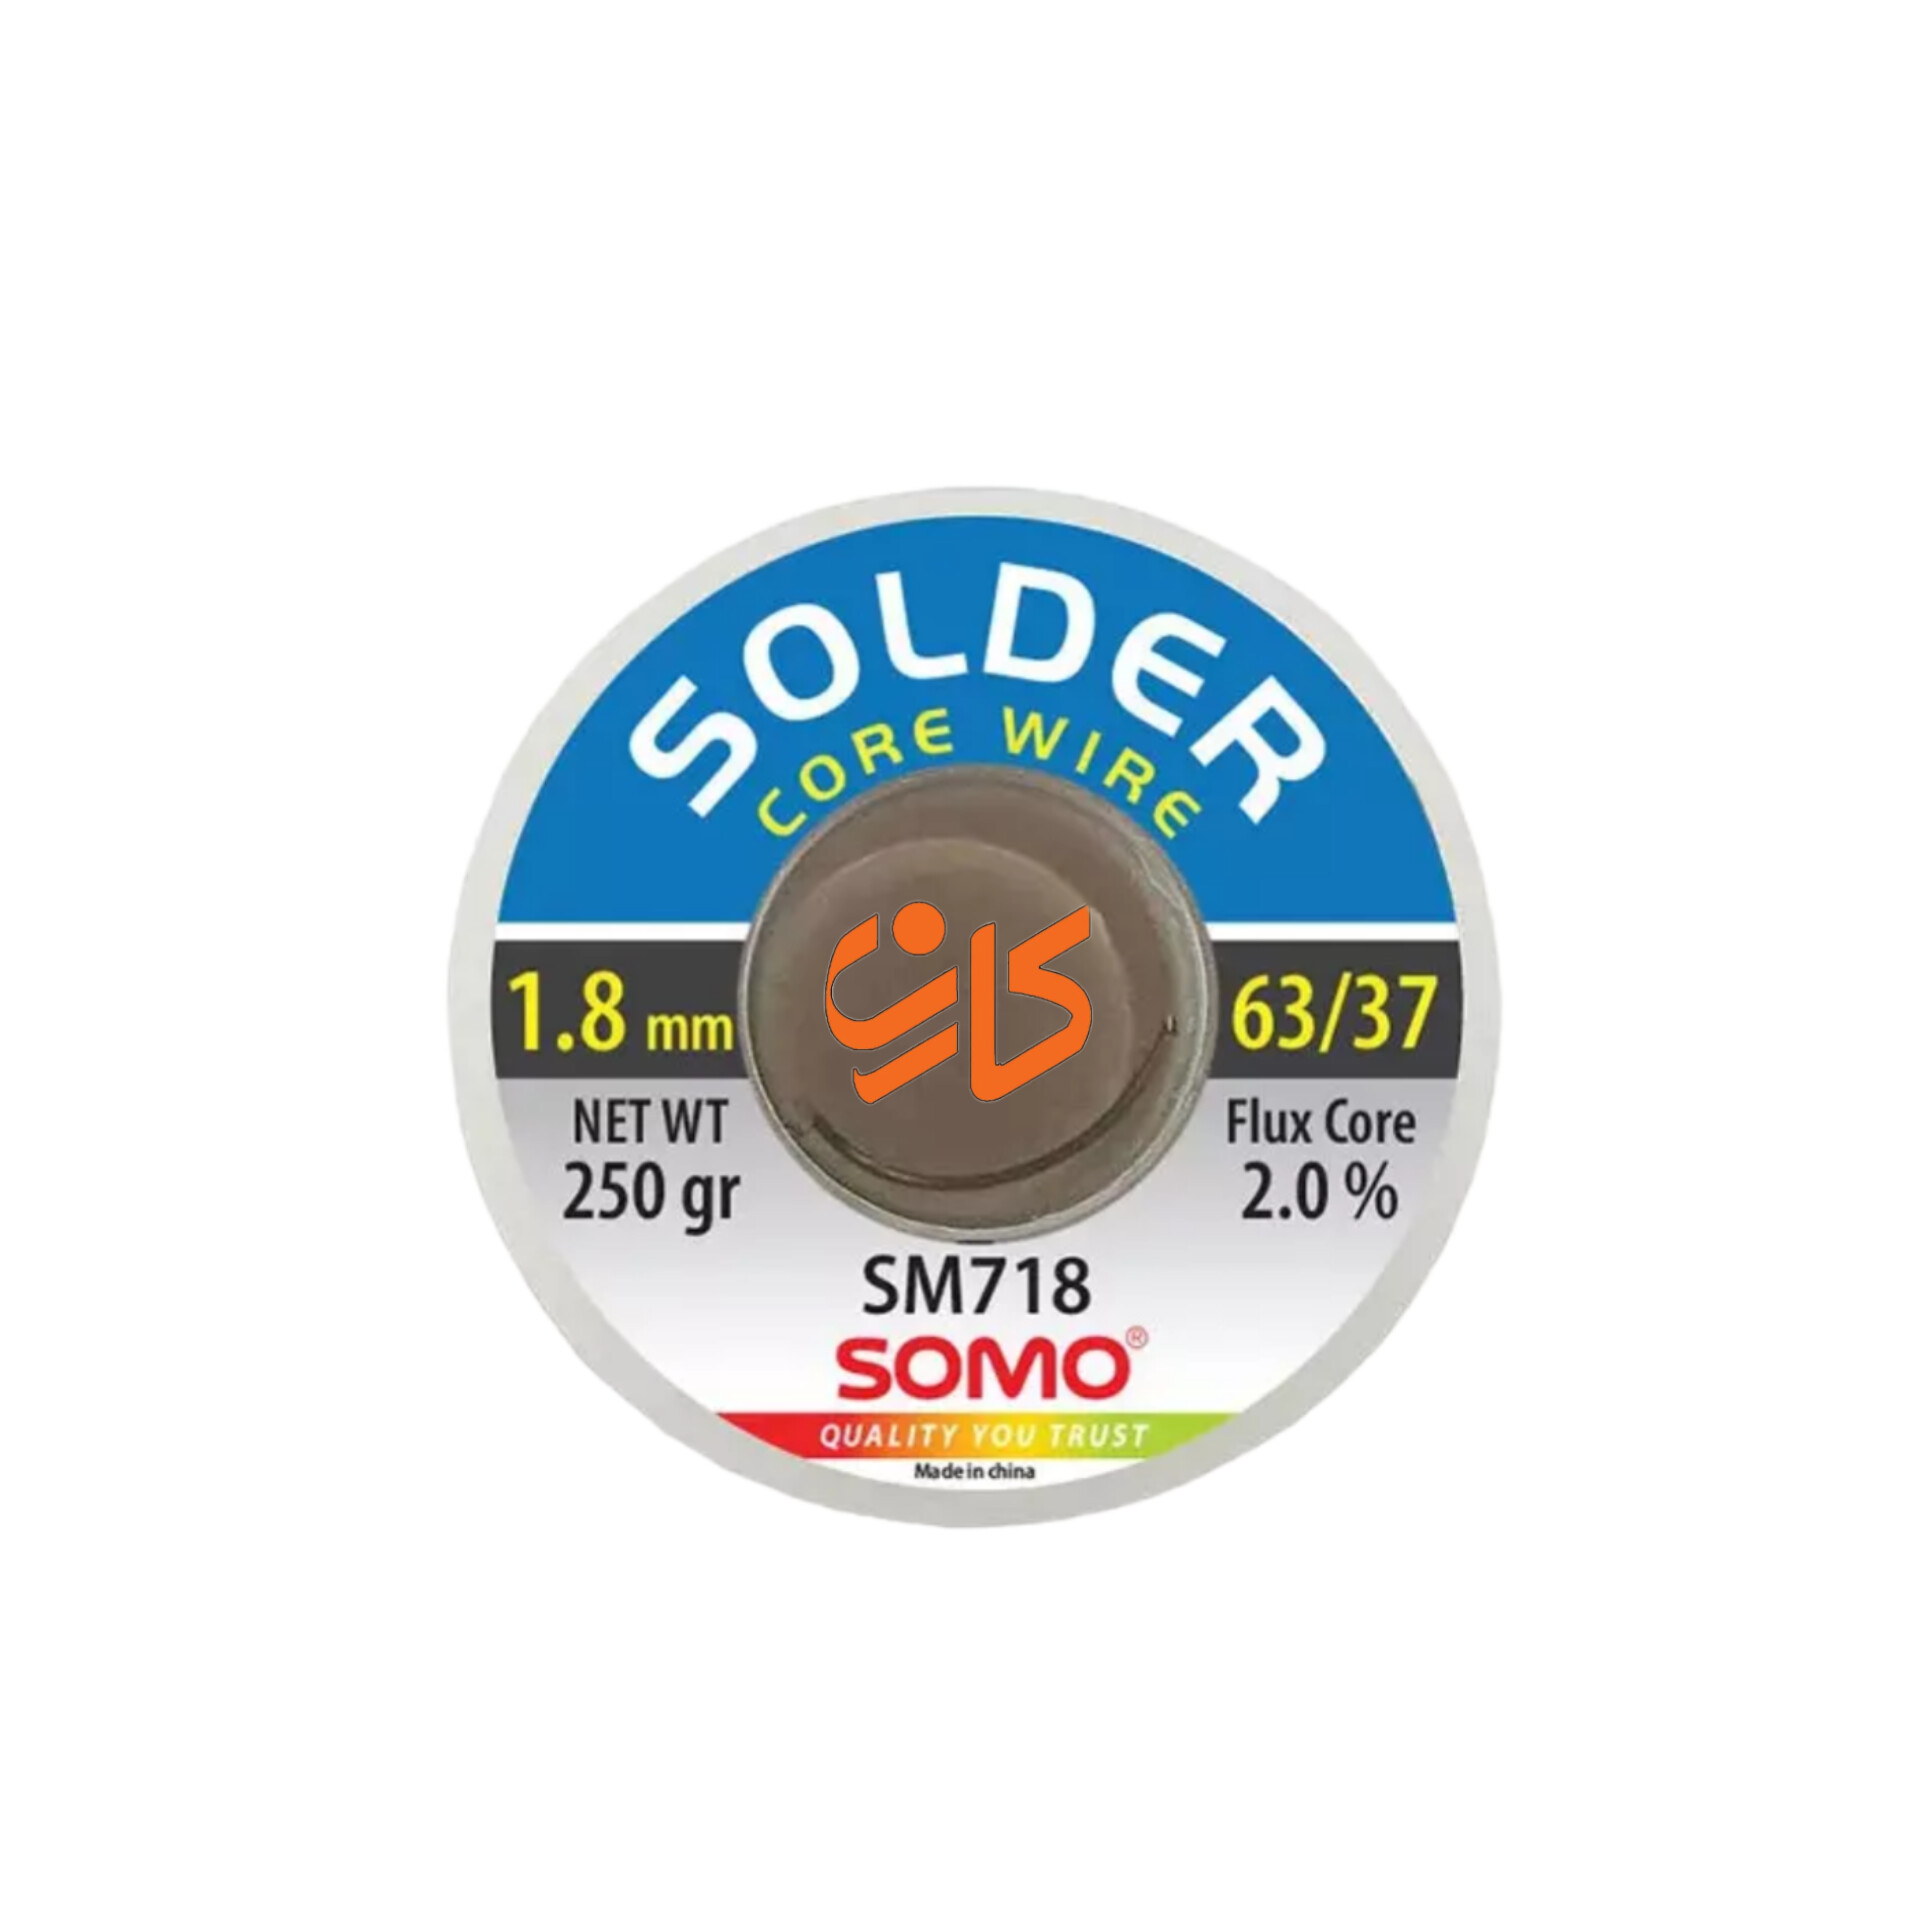 سیم لحیم سومو 1.8 میلیمتر 250 گرم مدل SOMO SM718